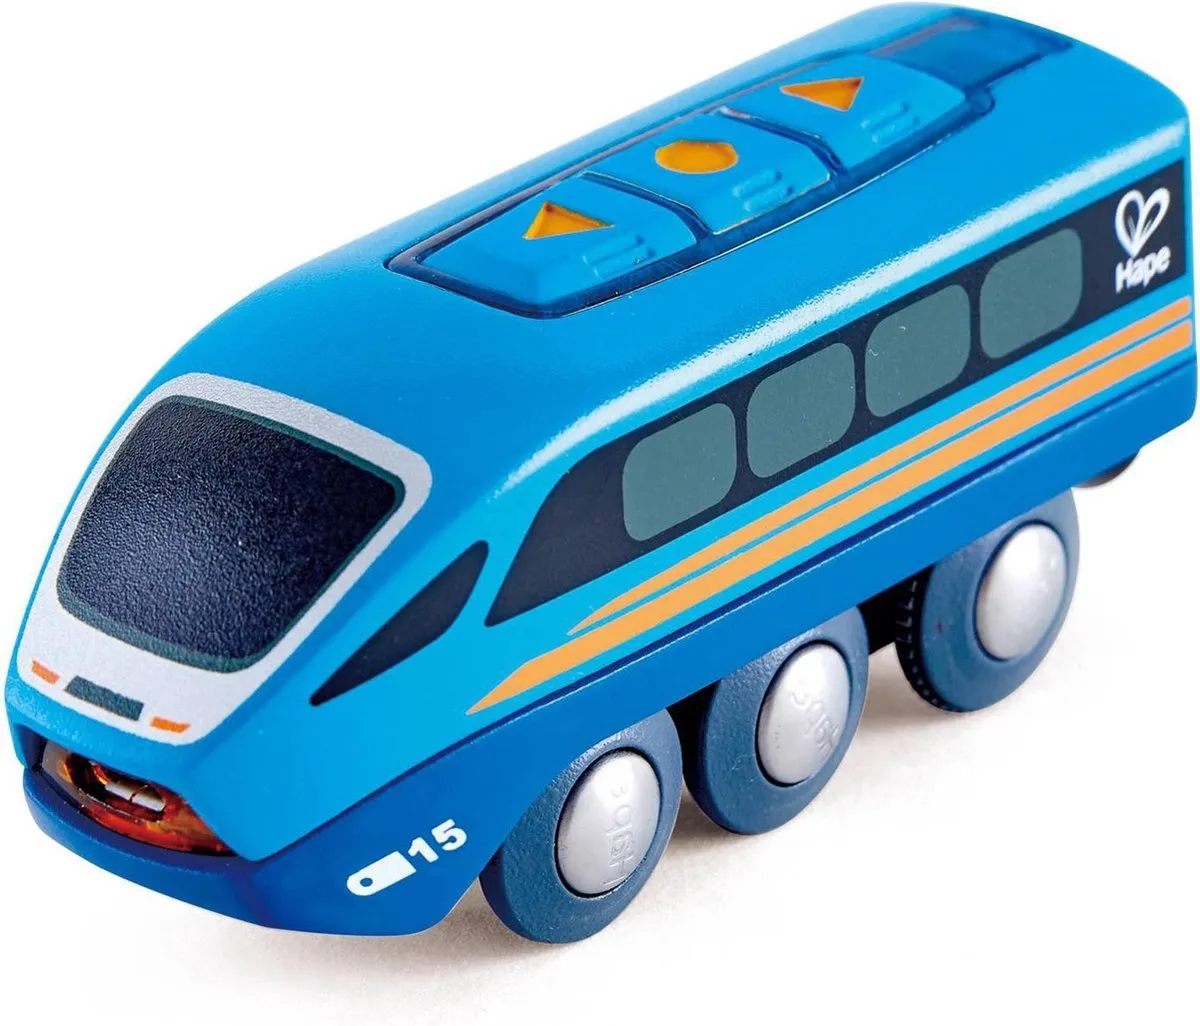 Hape Kunststof Locomotief Op Afstand Bedienbaar 11,8 Cm Blauw speelgoed